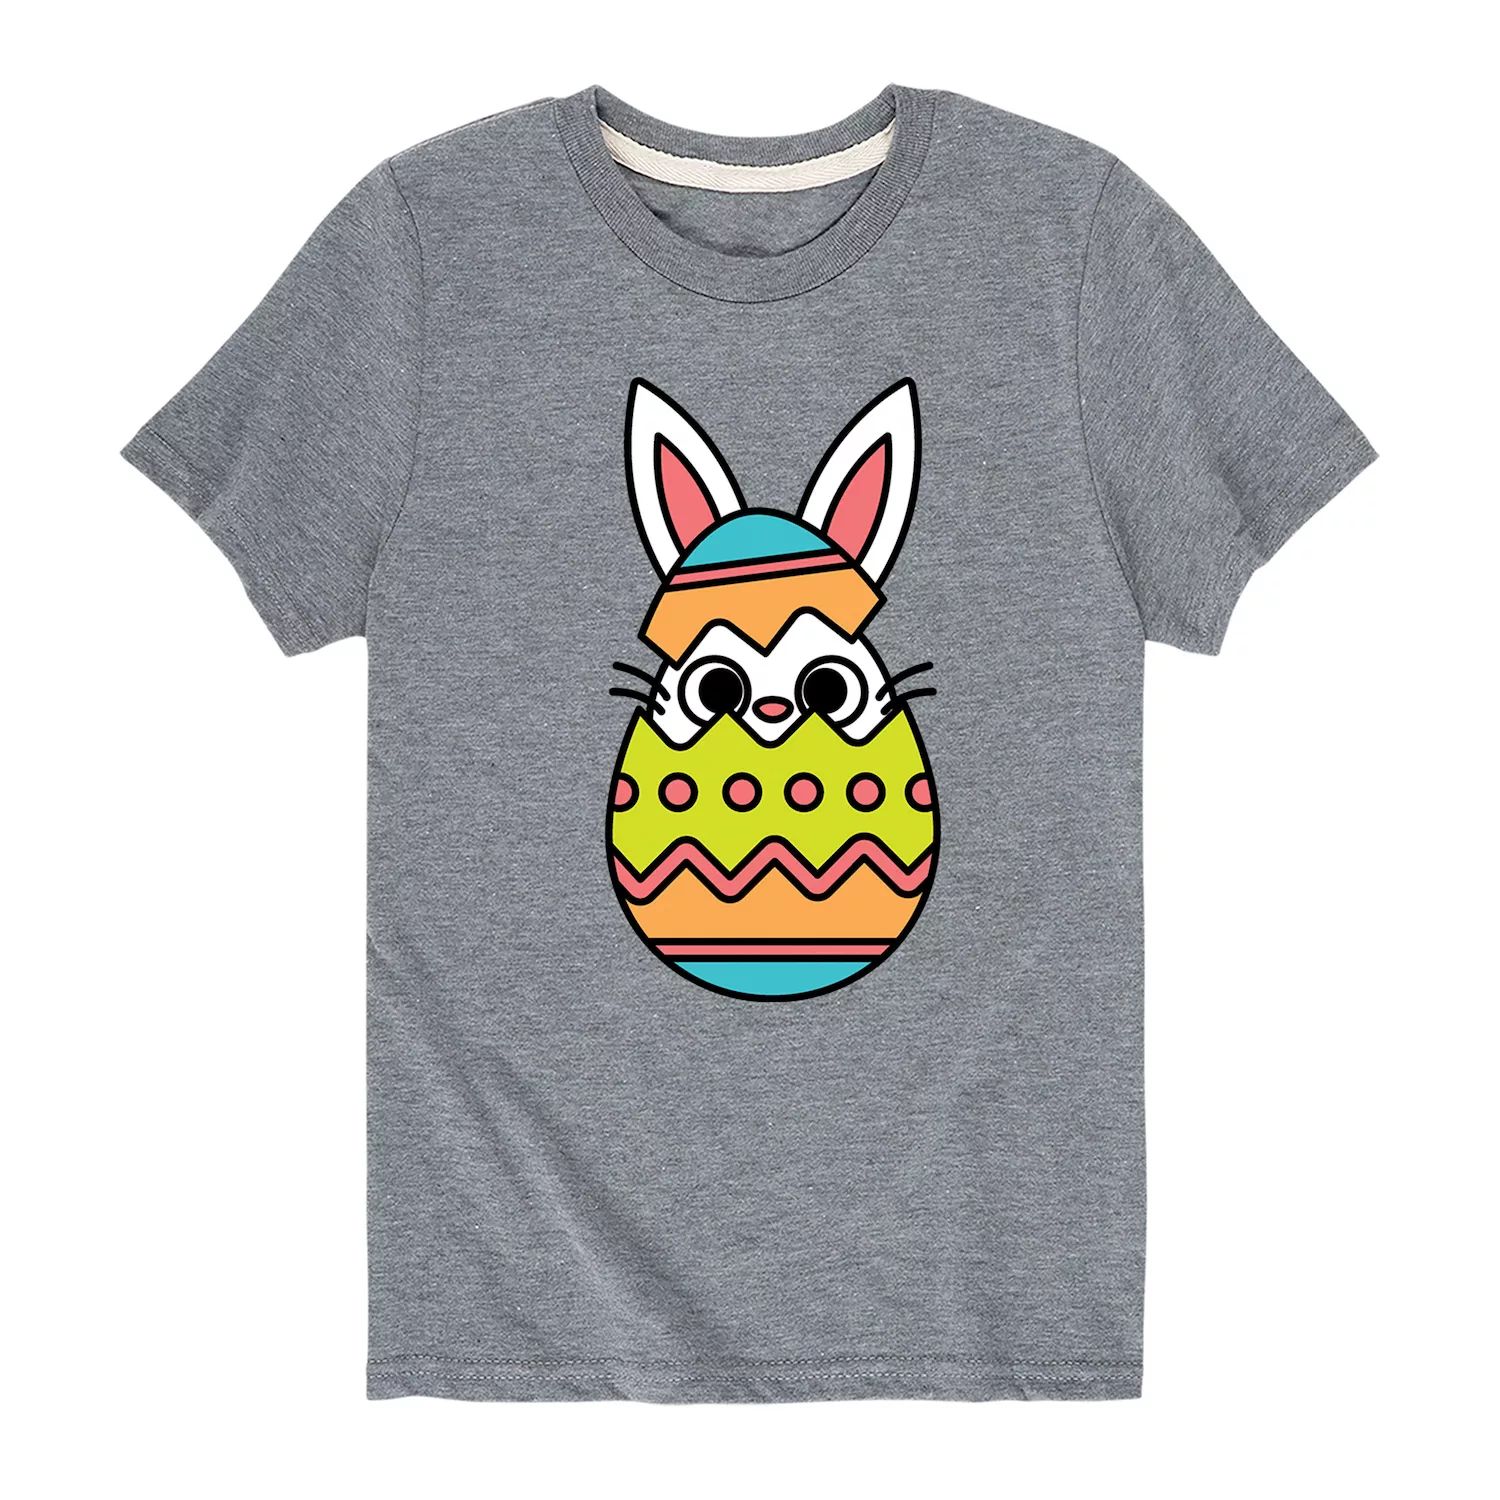 Футболка с рисунком «Пасхальный кролик» для мальчиков 8–20 лет Licensed Character футболка с рисунком пасхальный бант для мальчиков 8–20 лет chicka bow wow licensed character